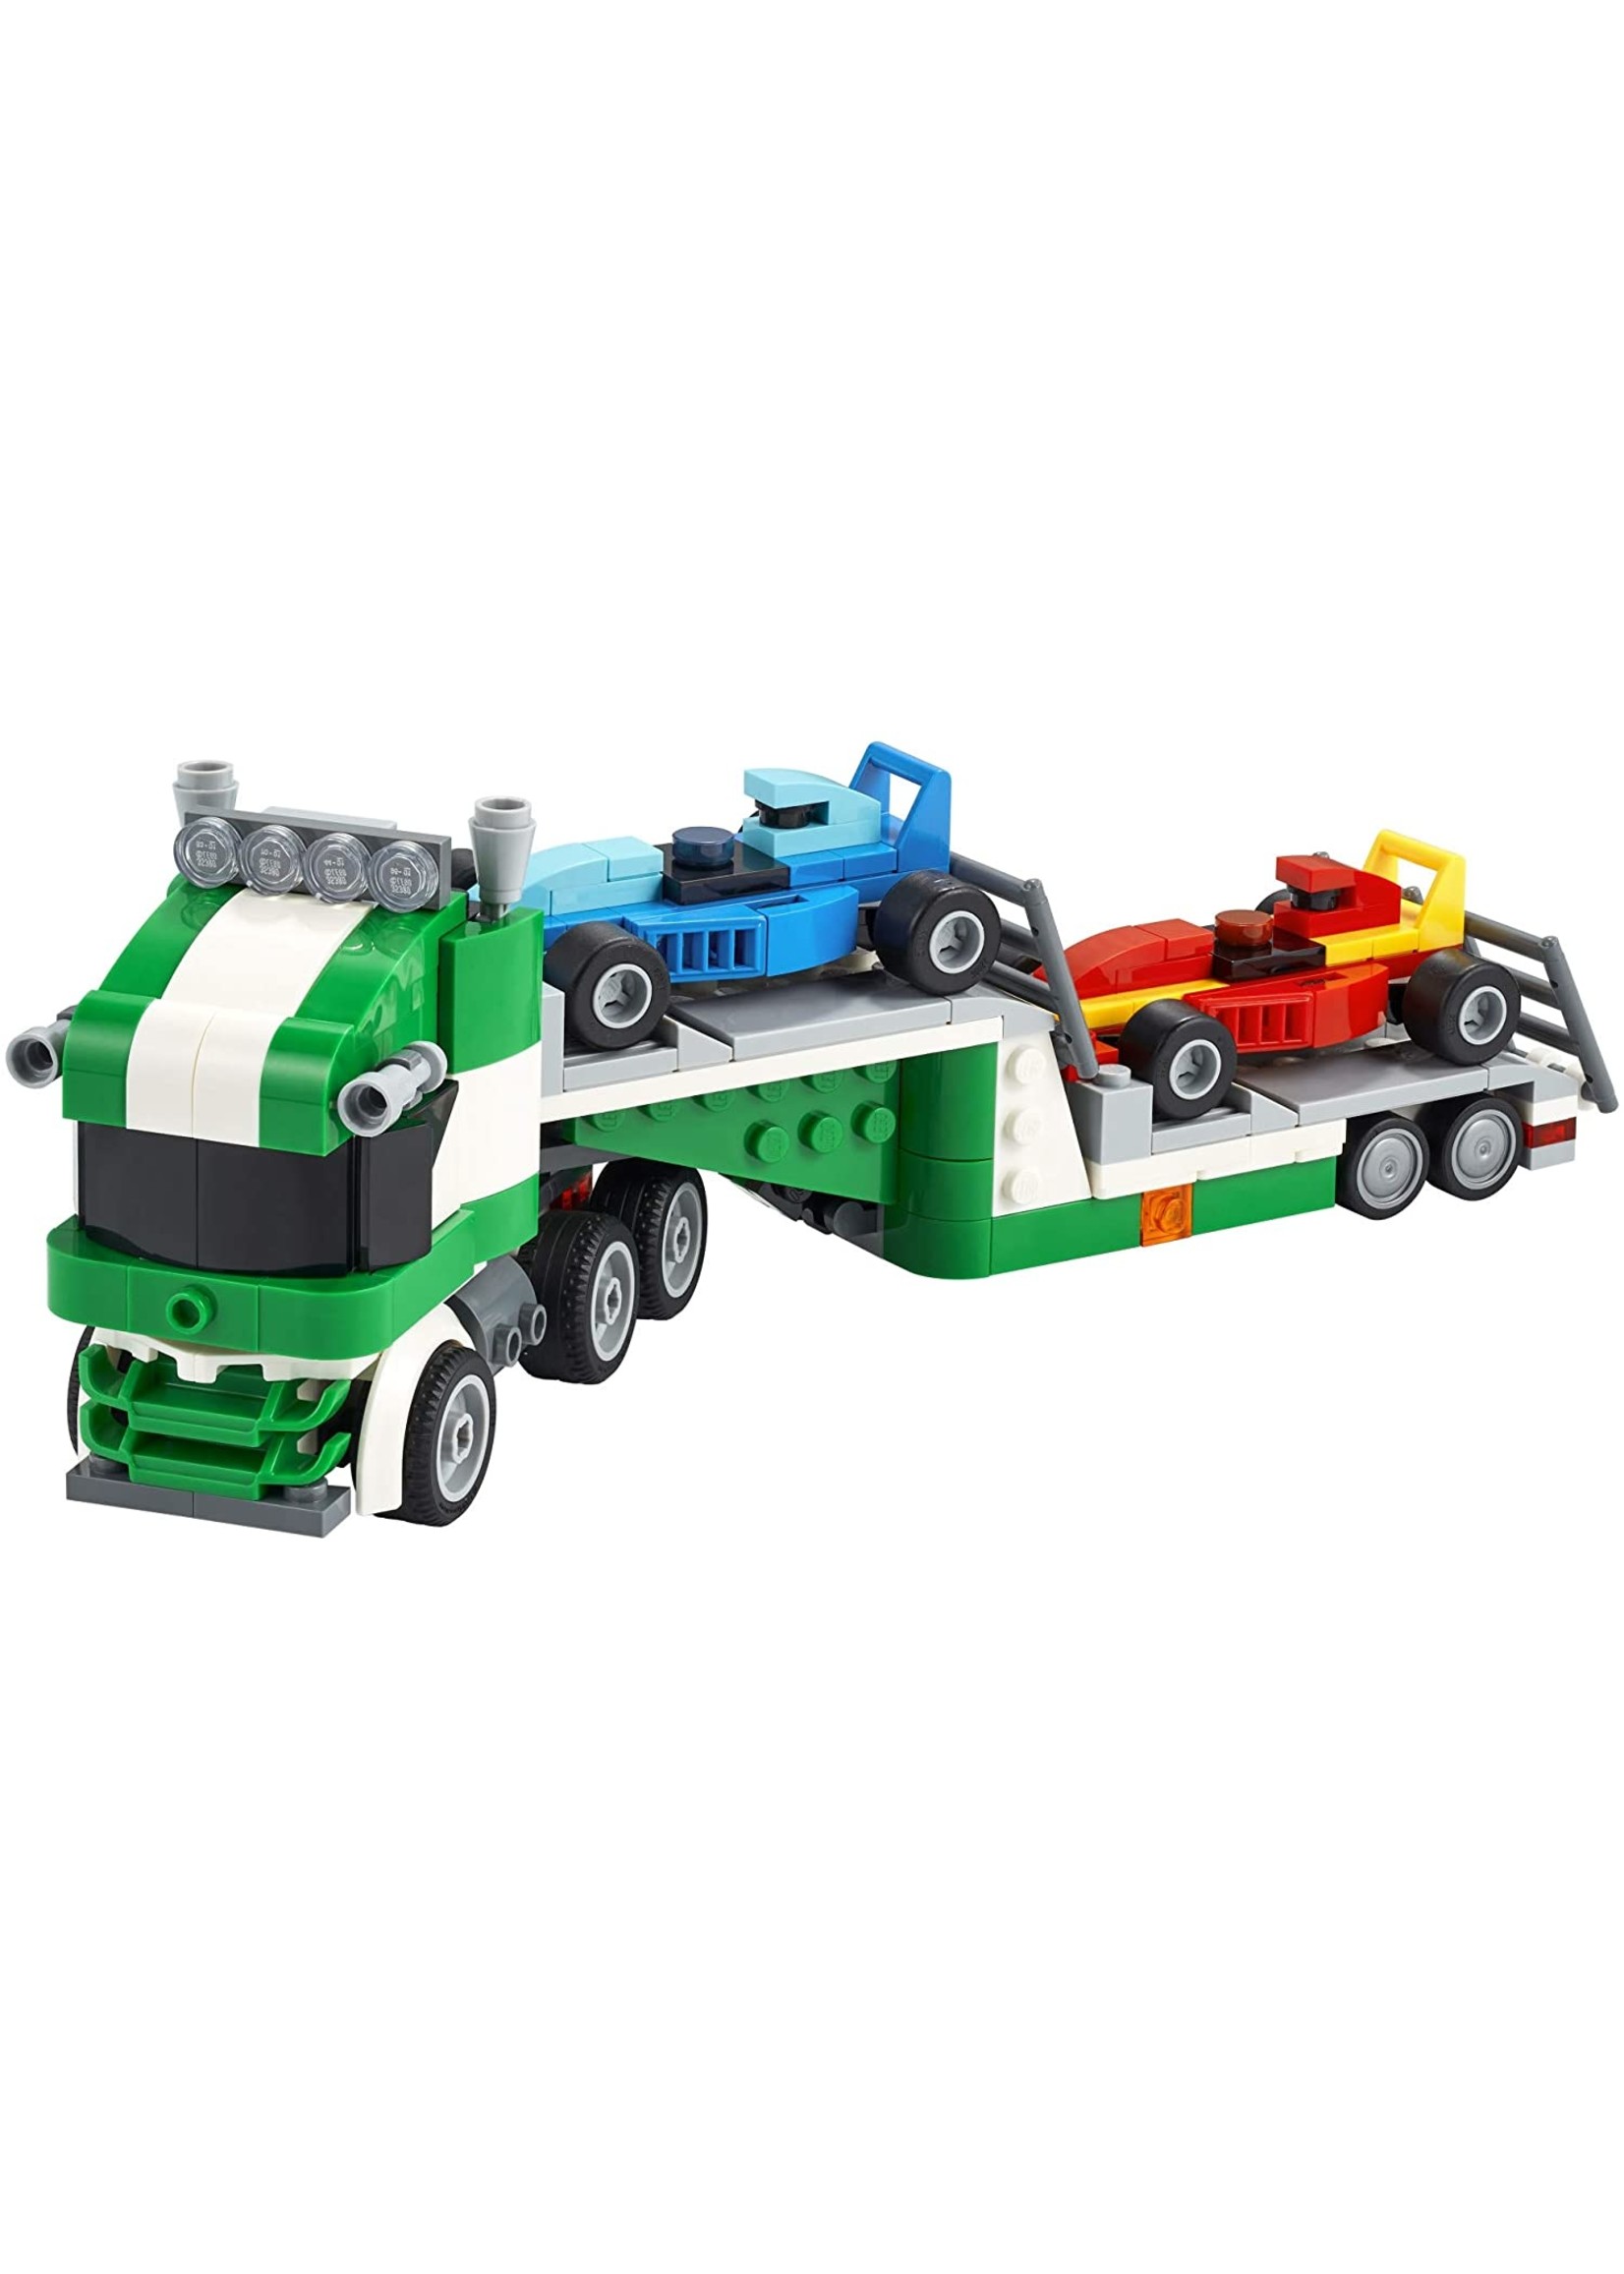 Lego 31113 - Race Transporter - Hub Hobby